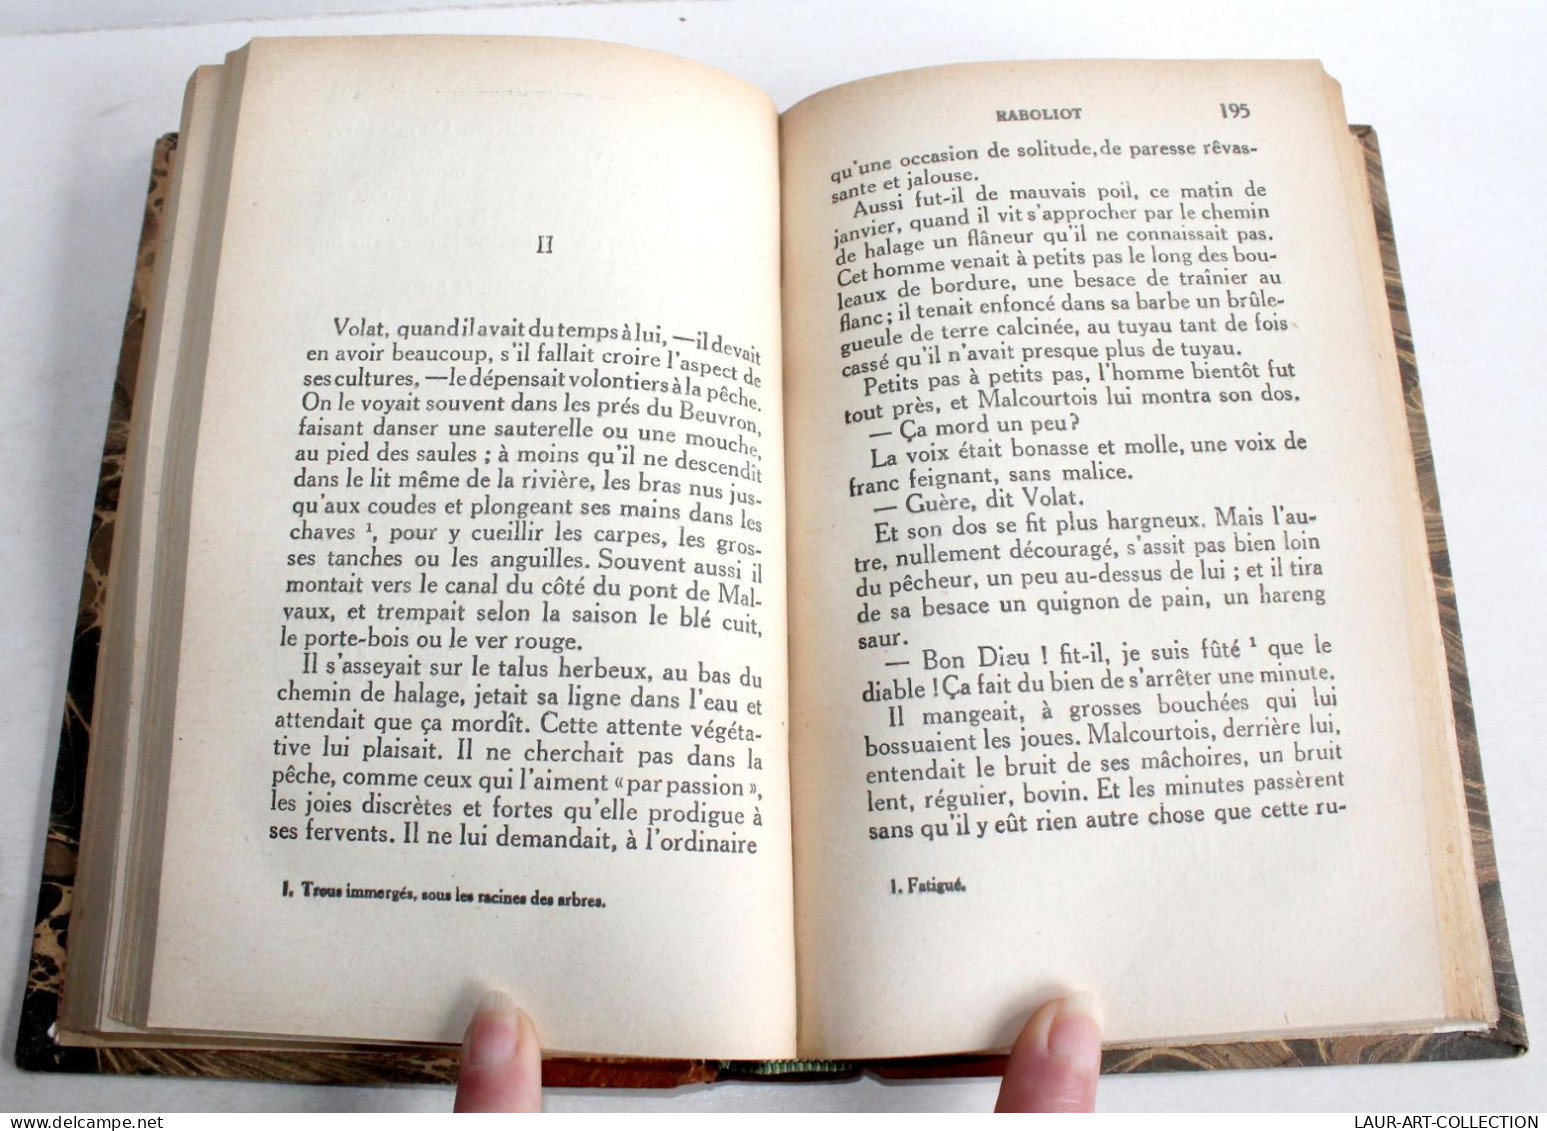 RABOLIOT Par MAURICE GENEVOIX 1925 EDITIONS BERNARD GRASSET / LIVRE ANCIEN XXe SIECLE (1303.72) - 1901-1940